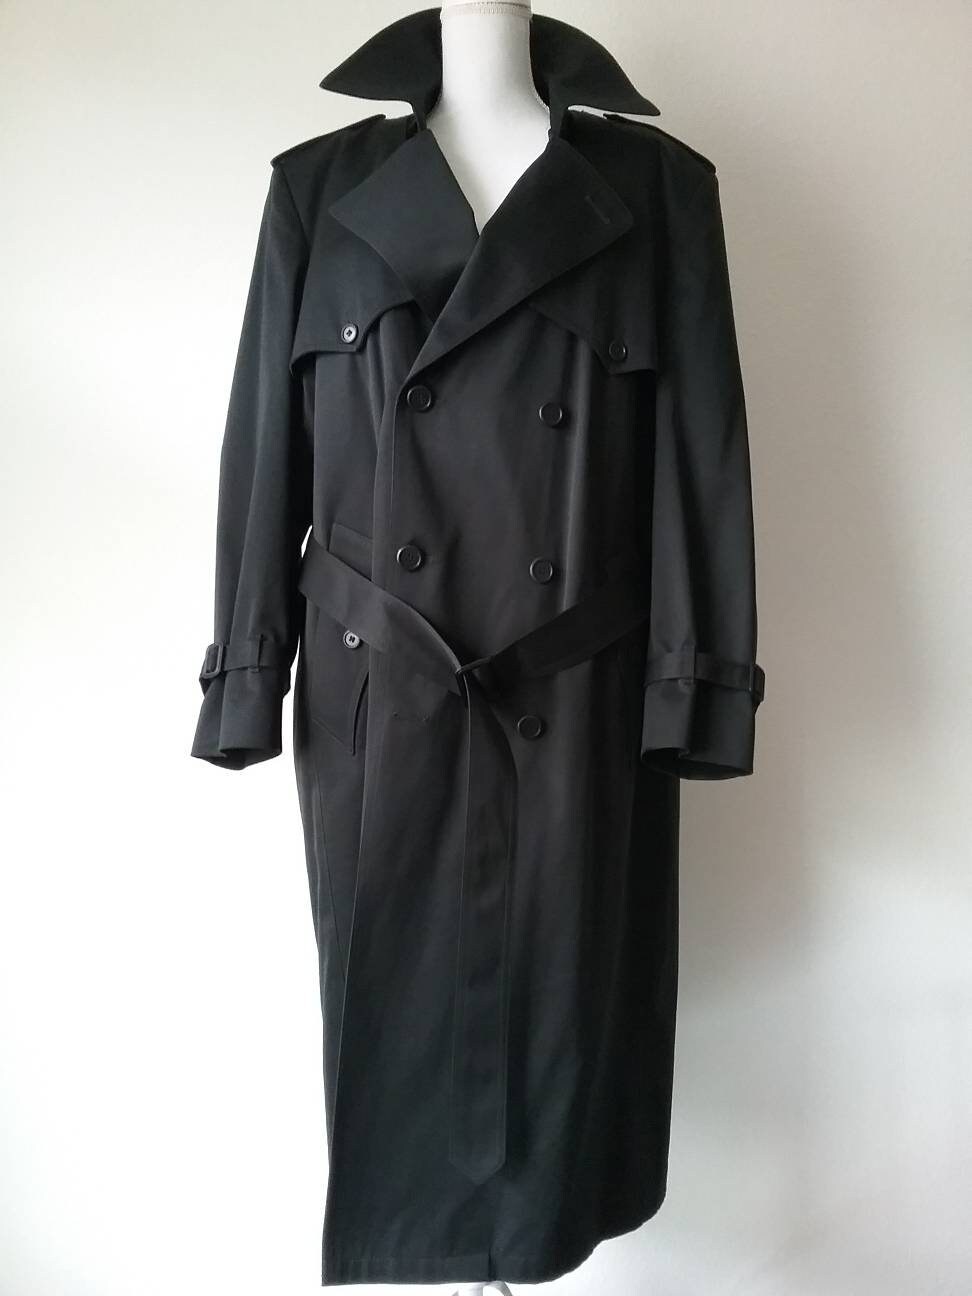 Towne London Fog Black Trench Coat Full Length Long Mens Size - Etsy